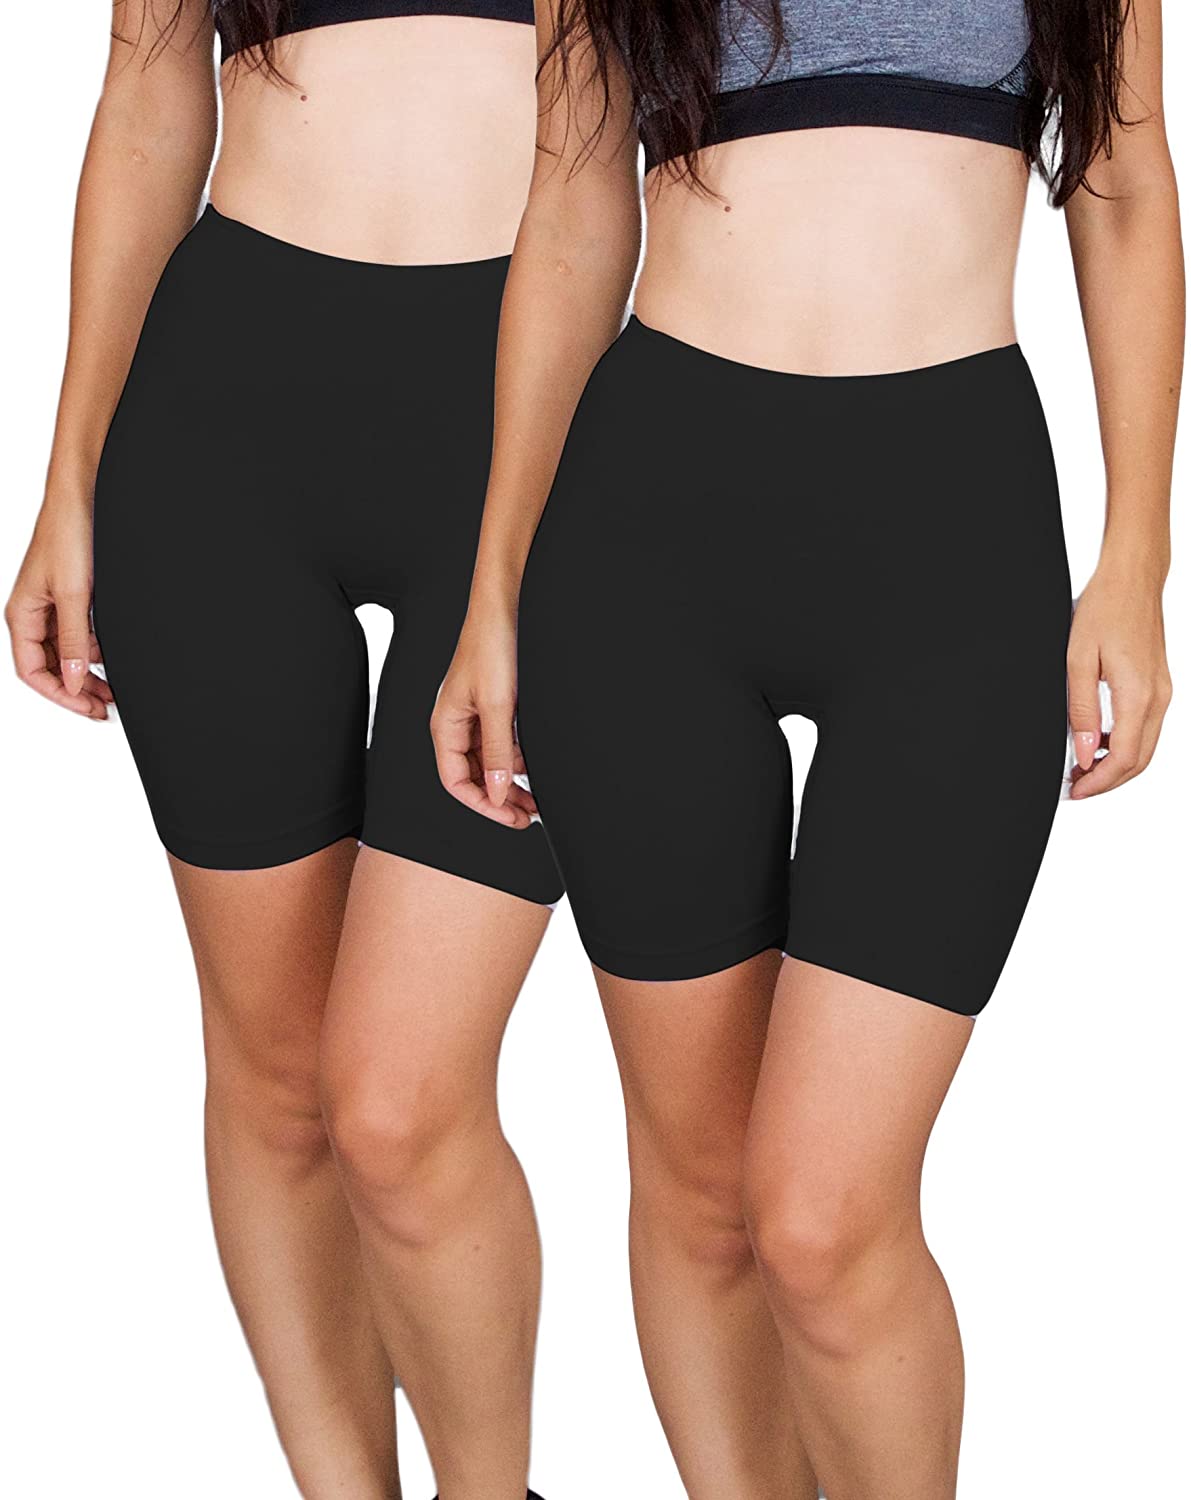 Emprella Slip Shorts for Under Dresses, 3 Pack Womens Seamless Bike Short 